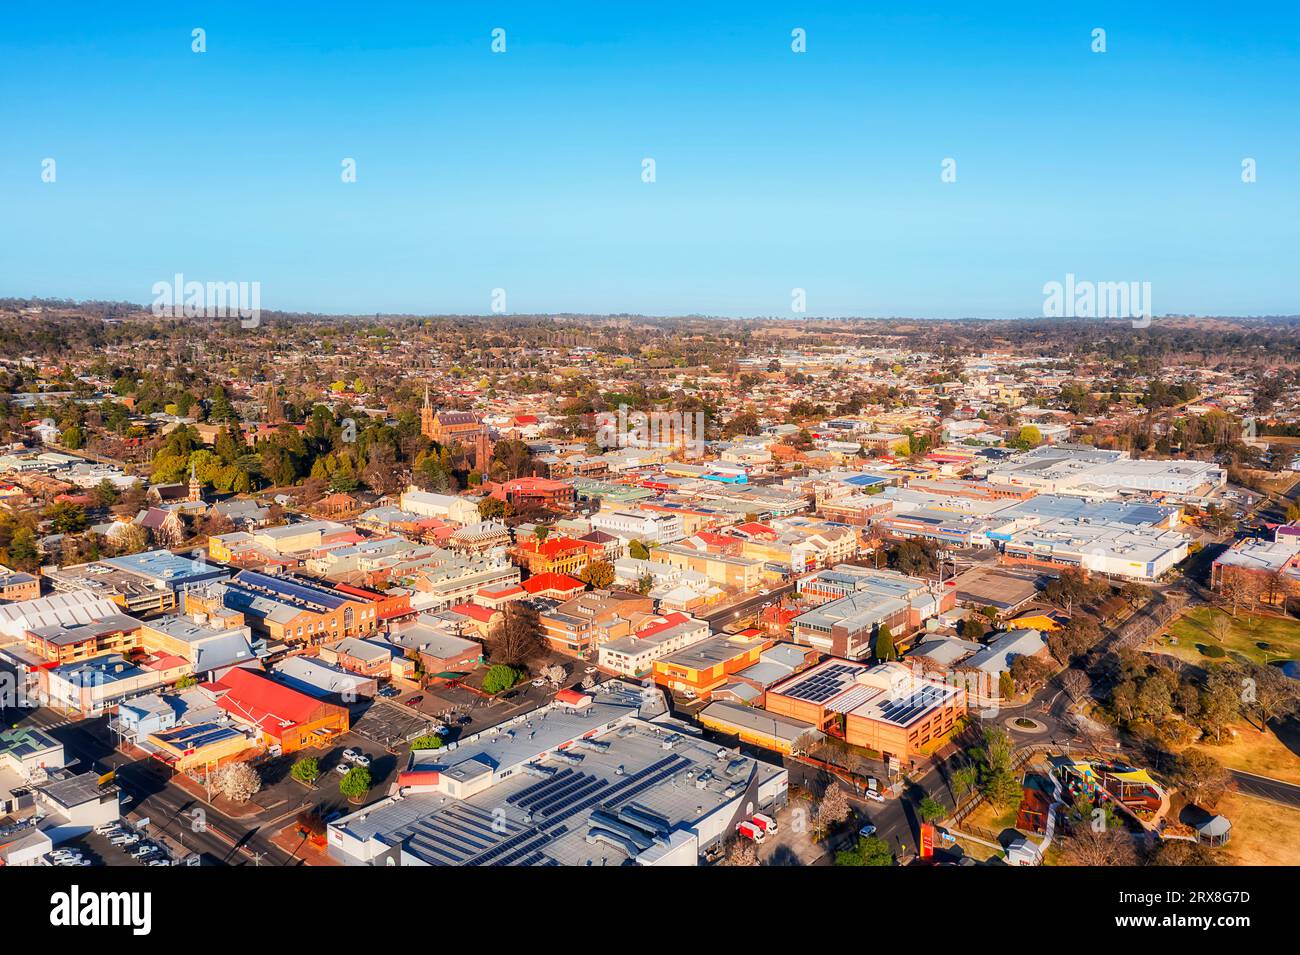 Centro o città rurale regionale di Armidale sull'altopiano dell'Australia - paesaggio urbano aereo. Foto Stock